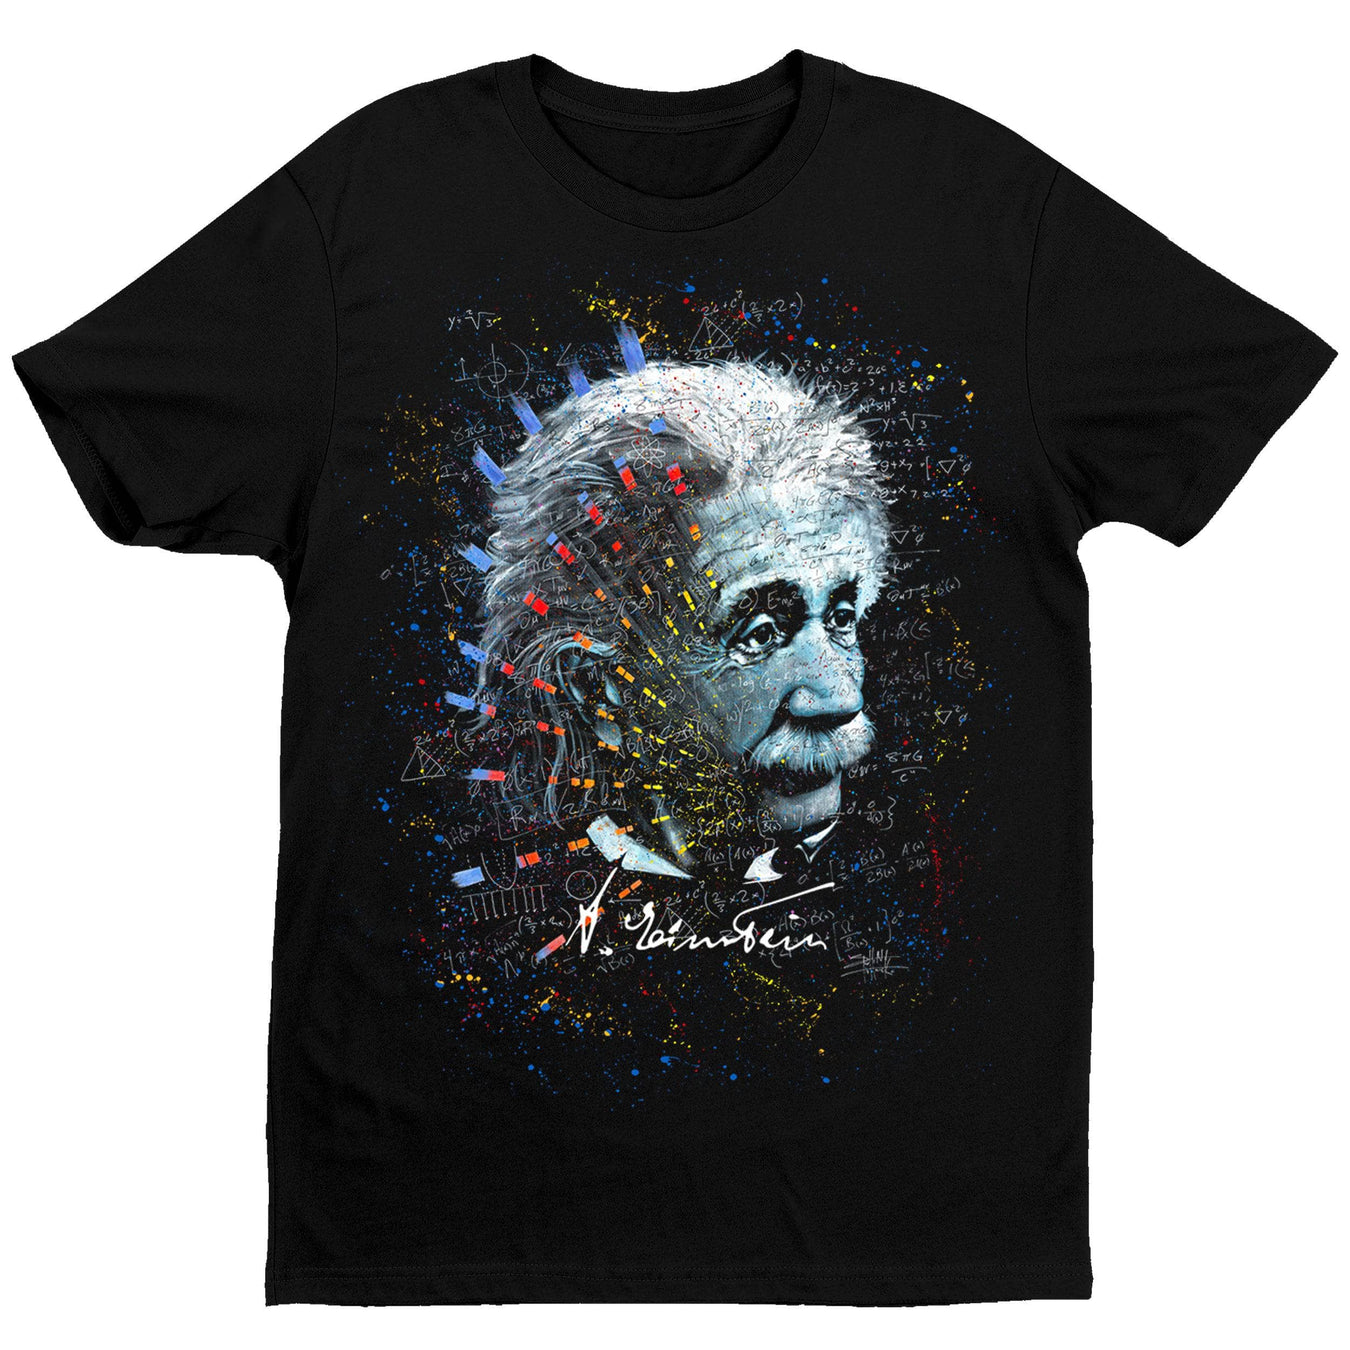 All Einstein